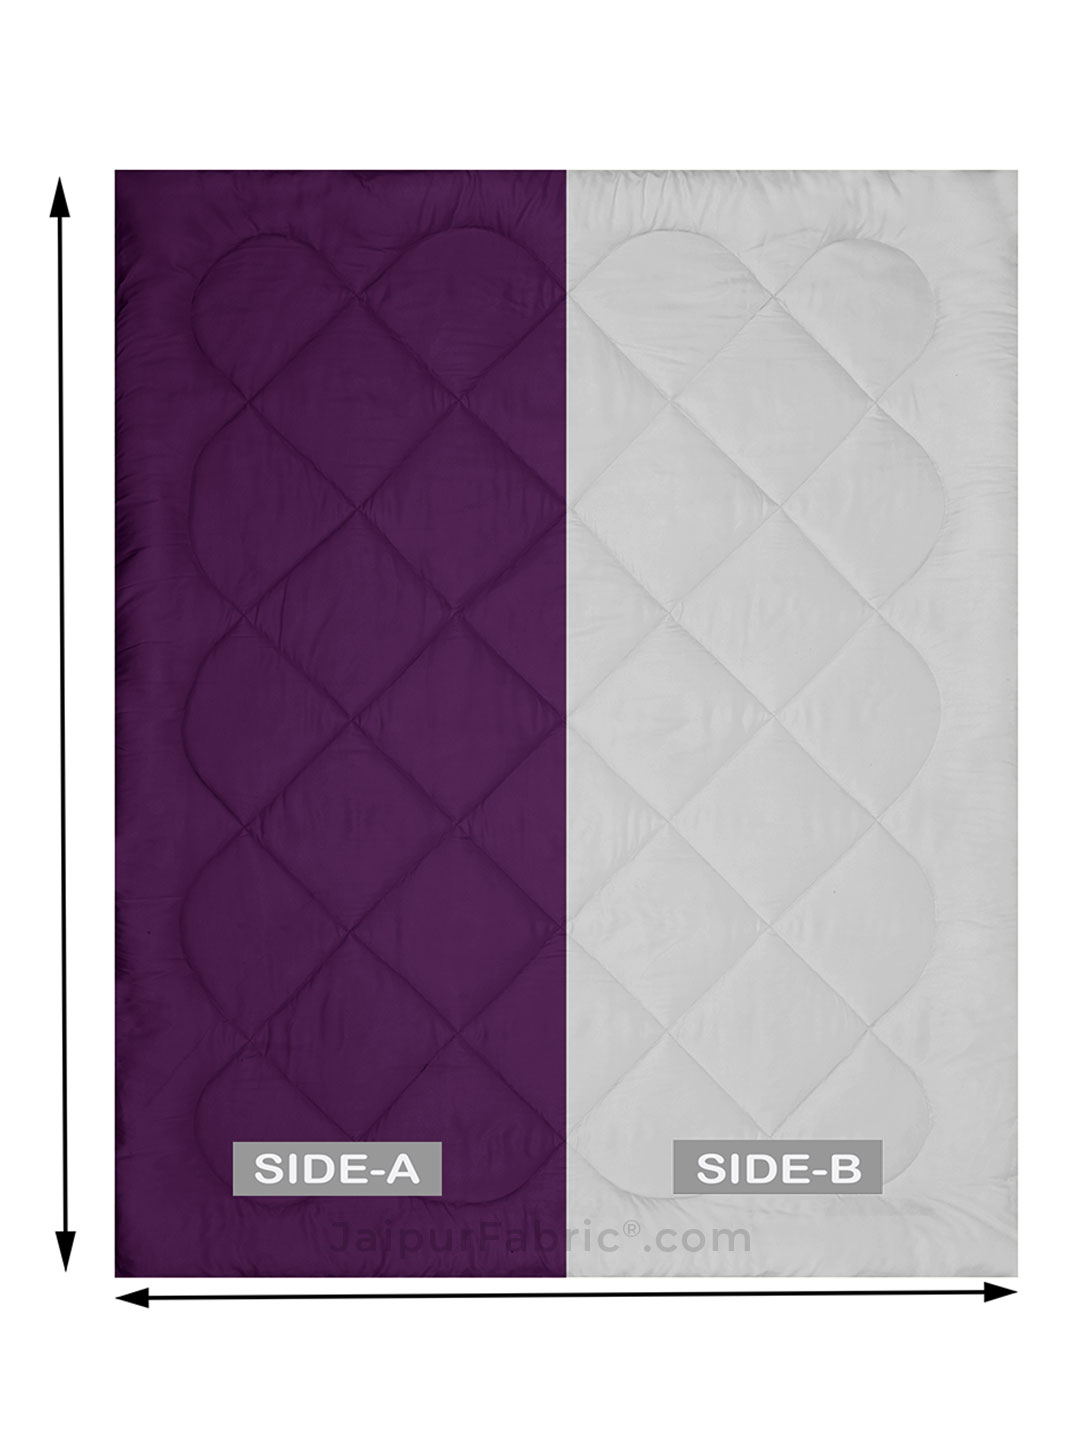 Purple Light Grey Double Bed Comforter